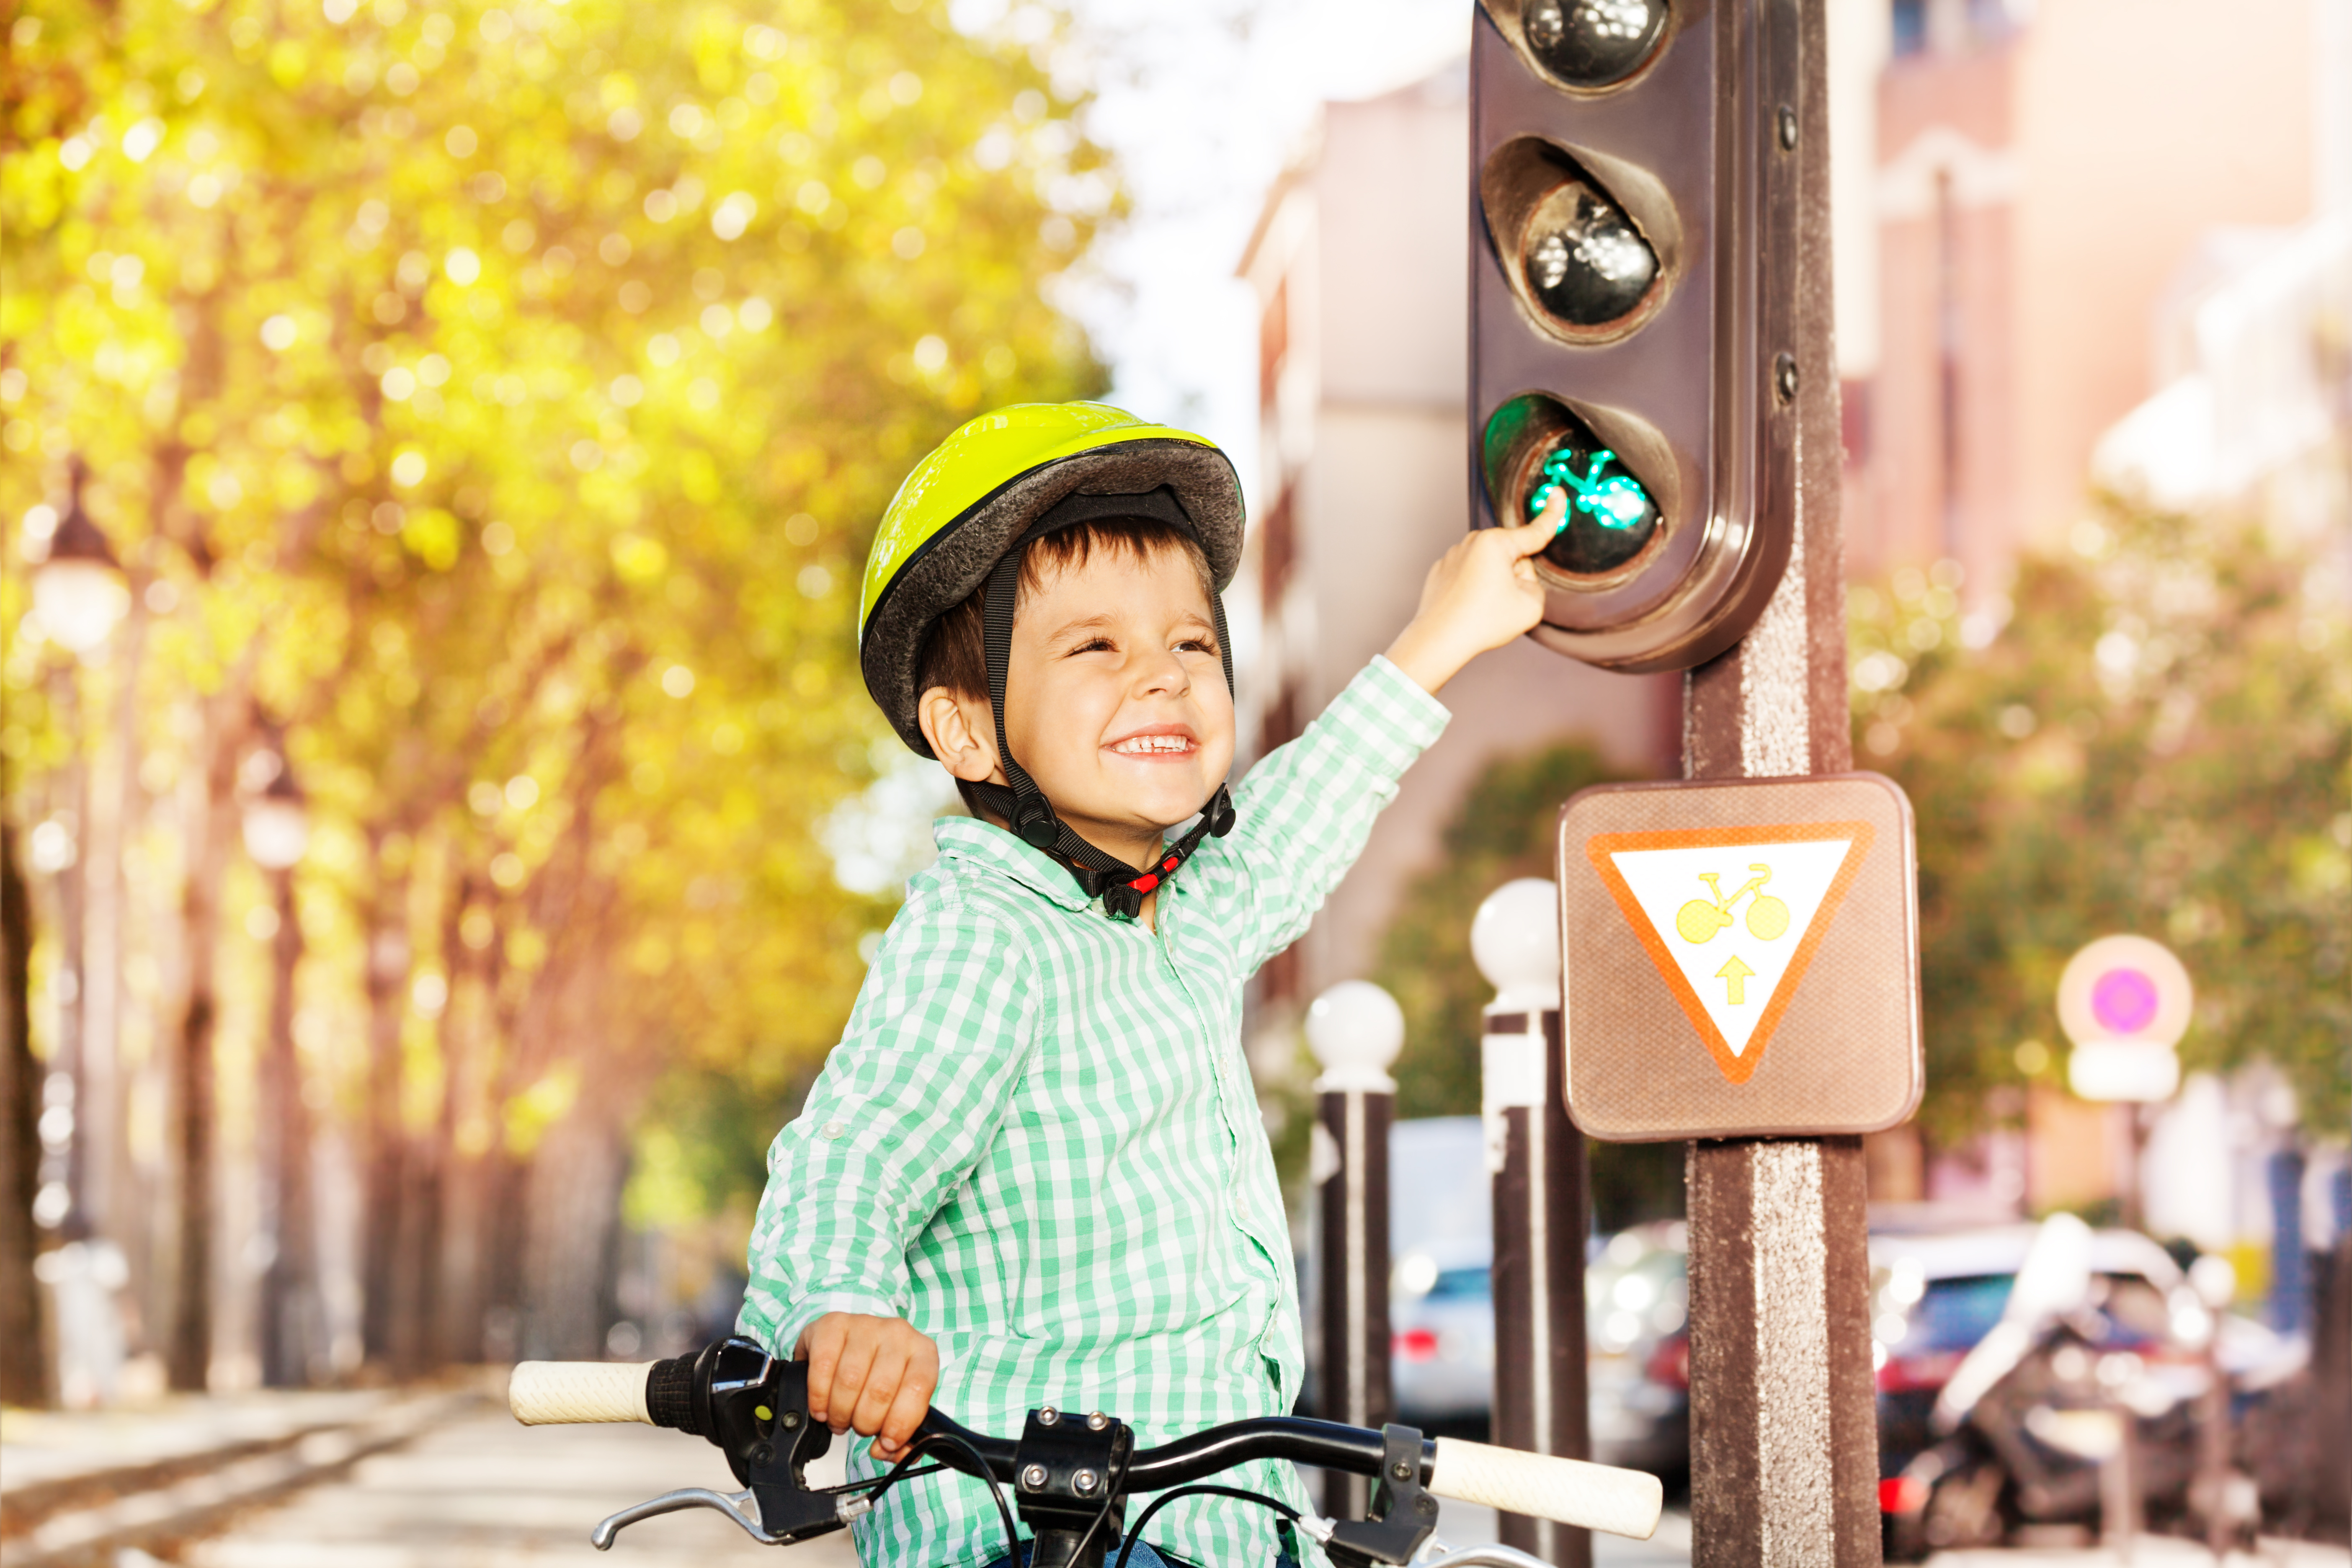 Правила дорожного движения для велосипедистов 